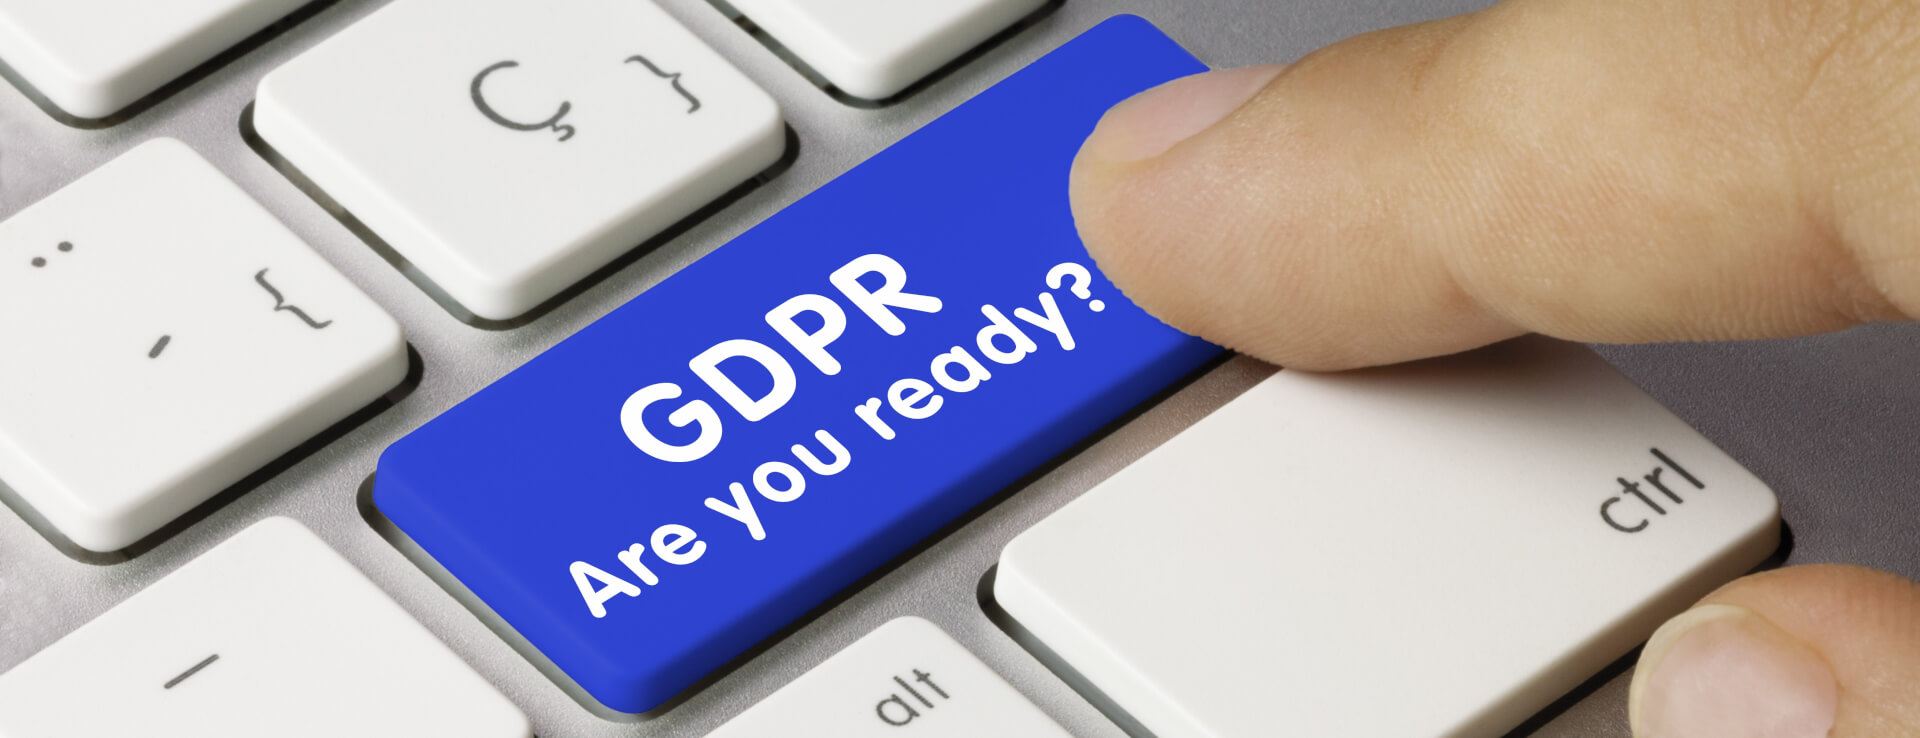 GPDR - General Data Protection Regulation